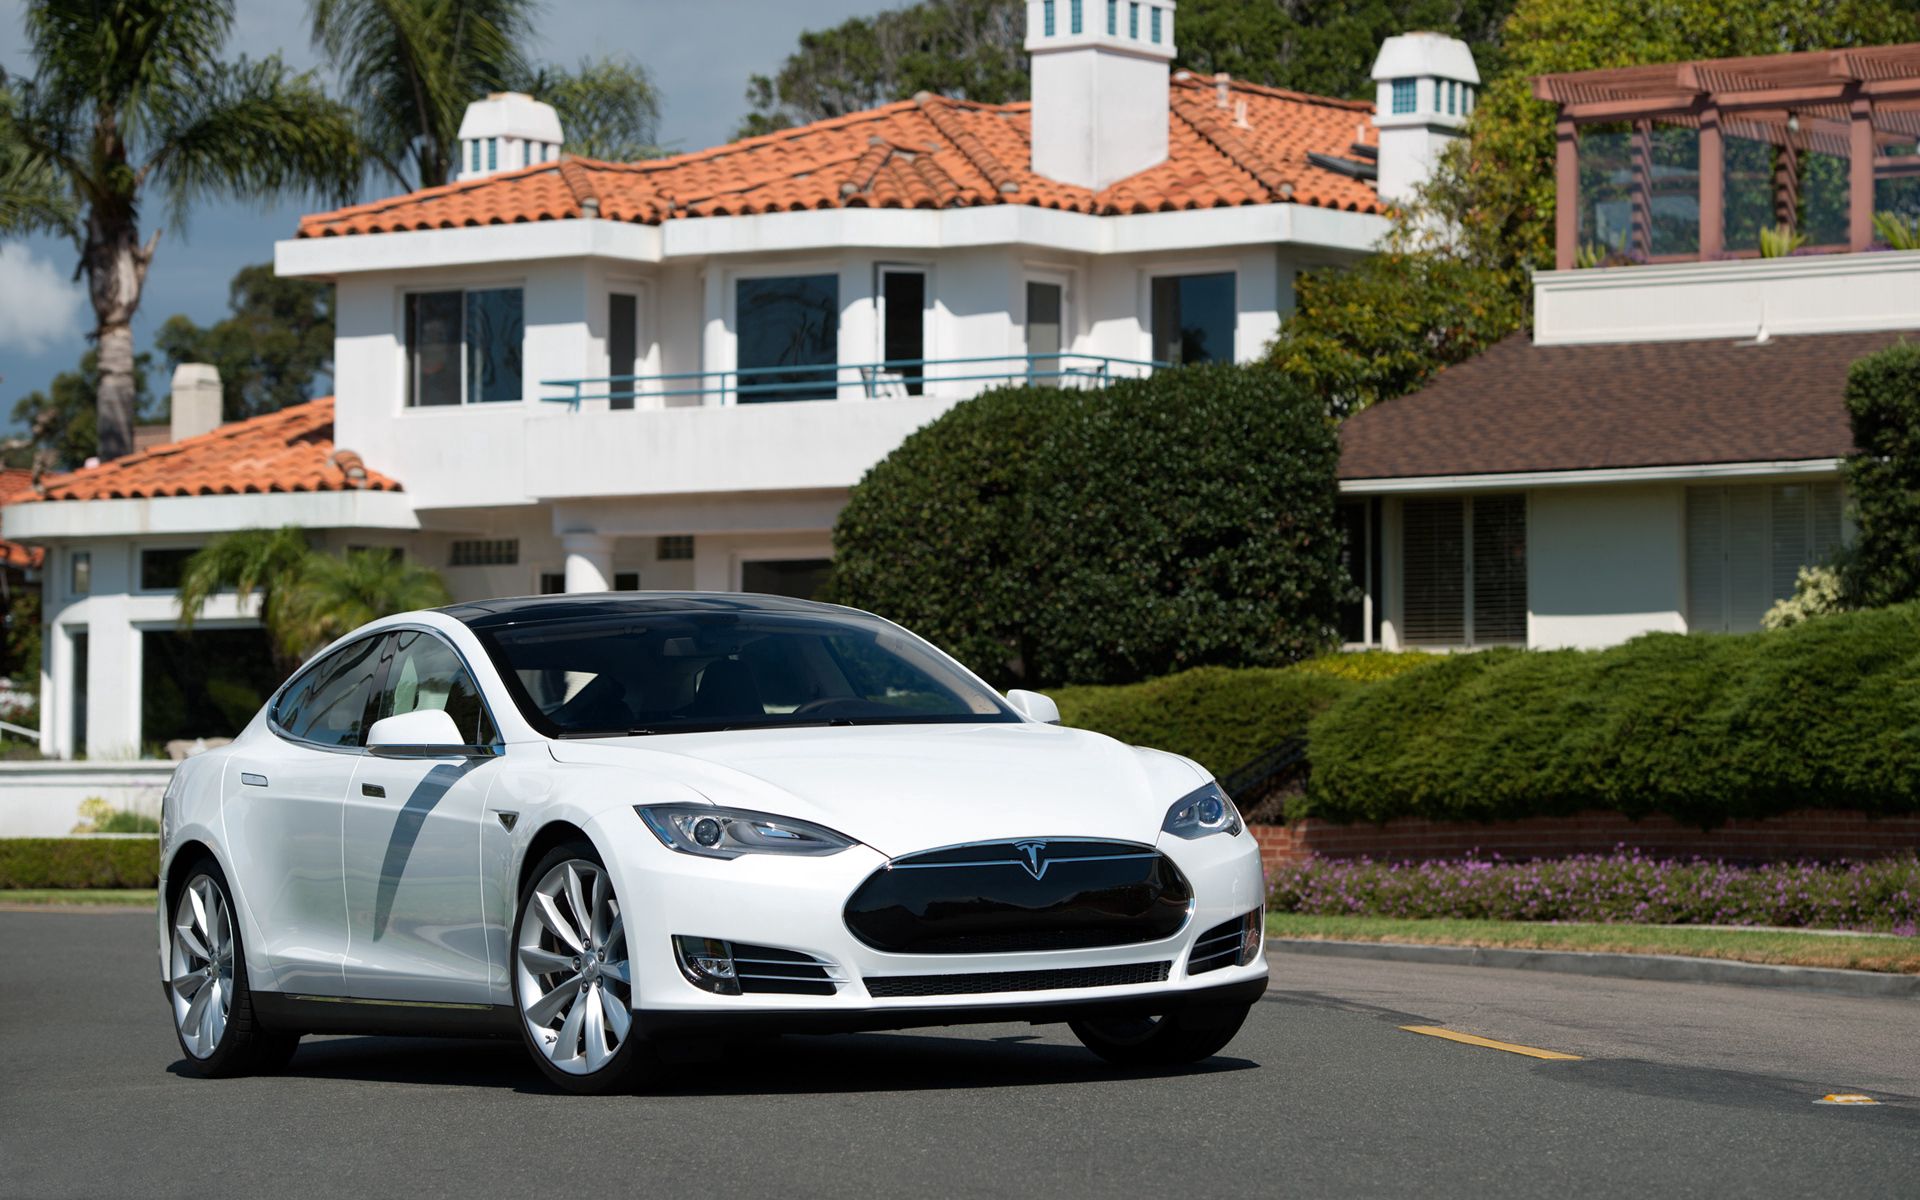 Скачать обои Tesla Model S на телефон бесплатно